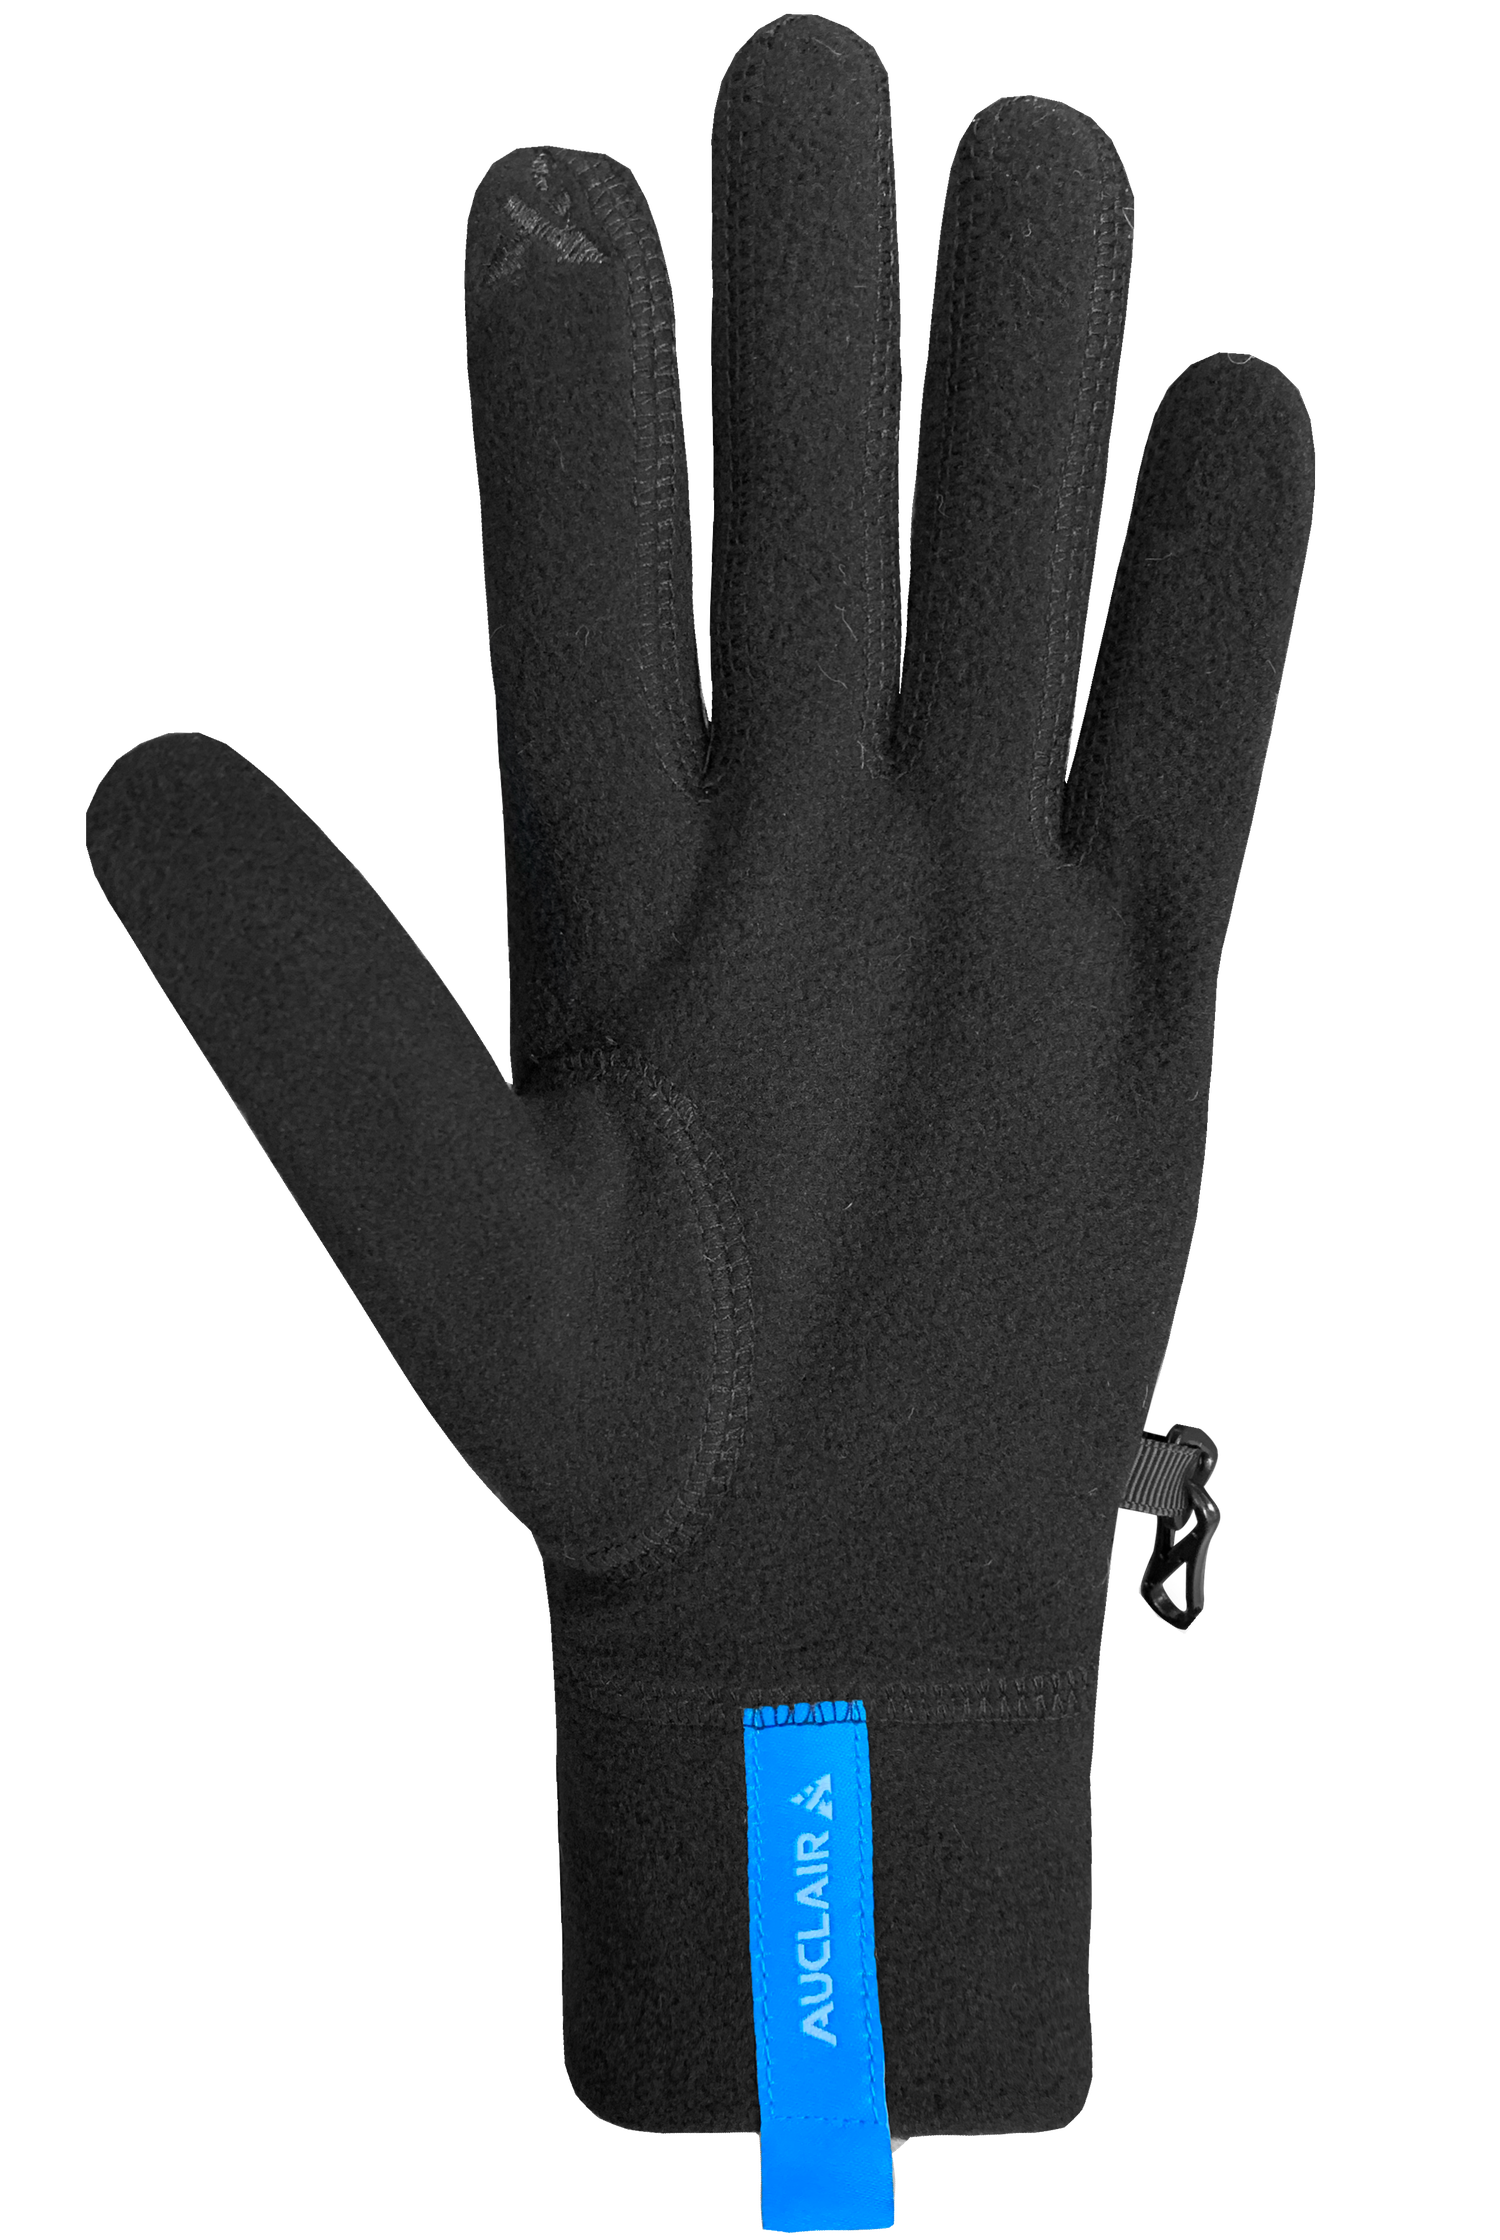 Auclair Heated Liner Glove - Unisex